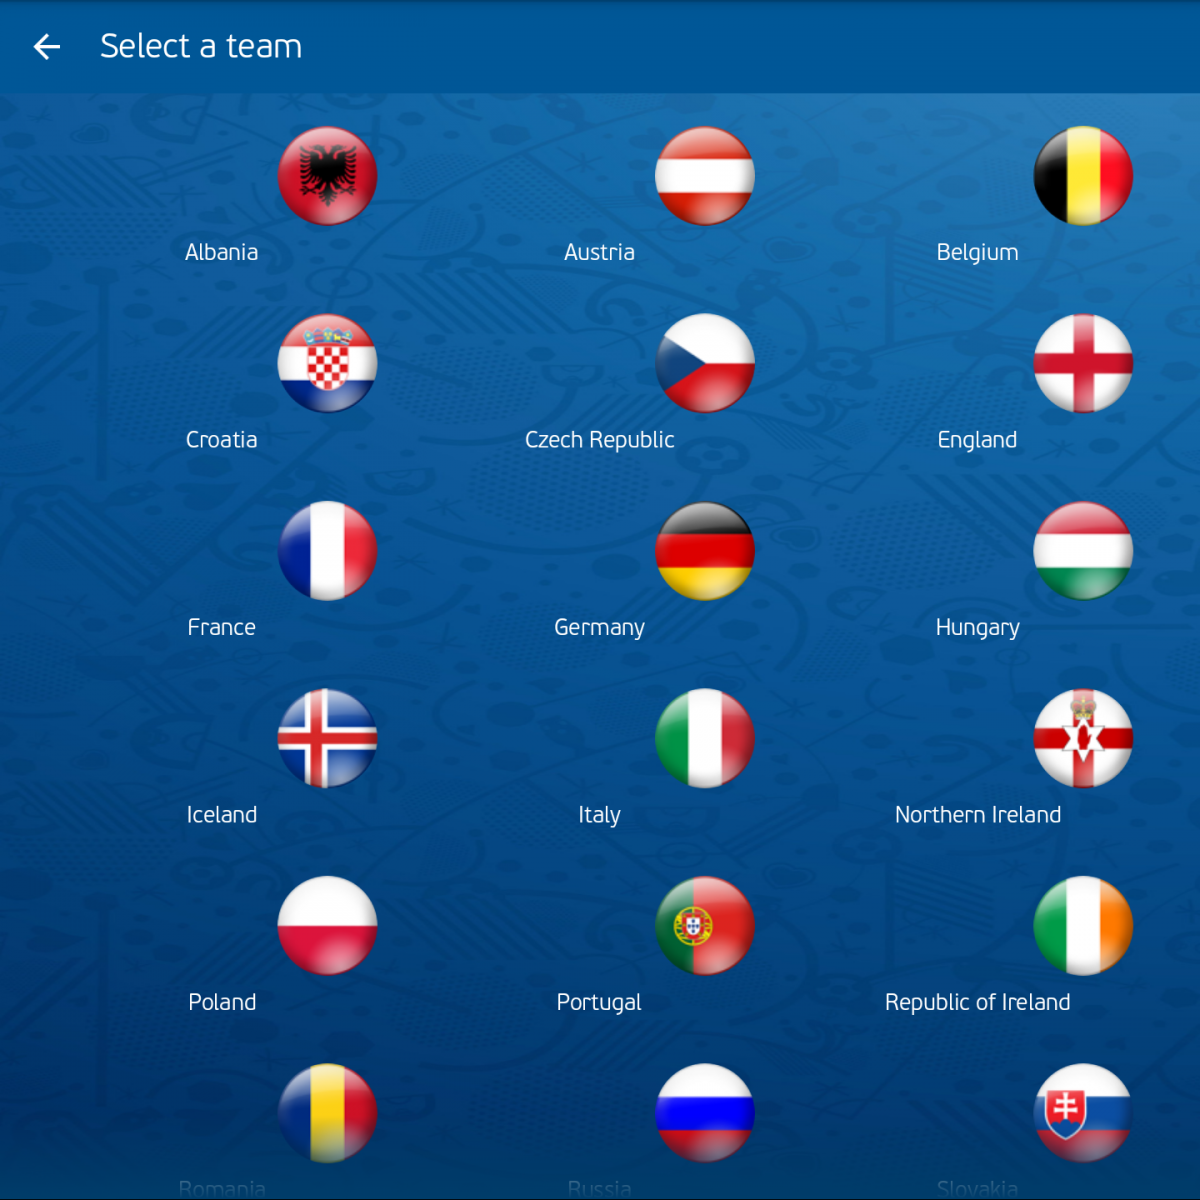 "UEFA EURO 2016 Official App" Ứng dụng giúp cập nhật thông tin về Euro 2016